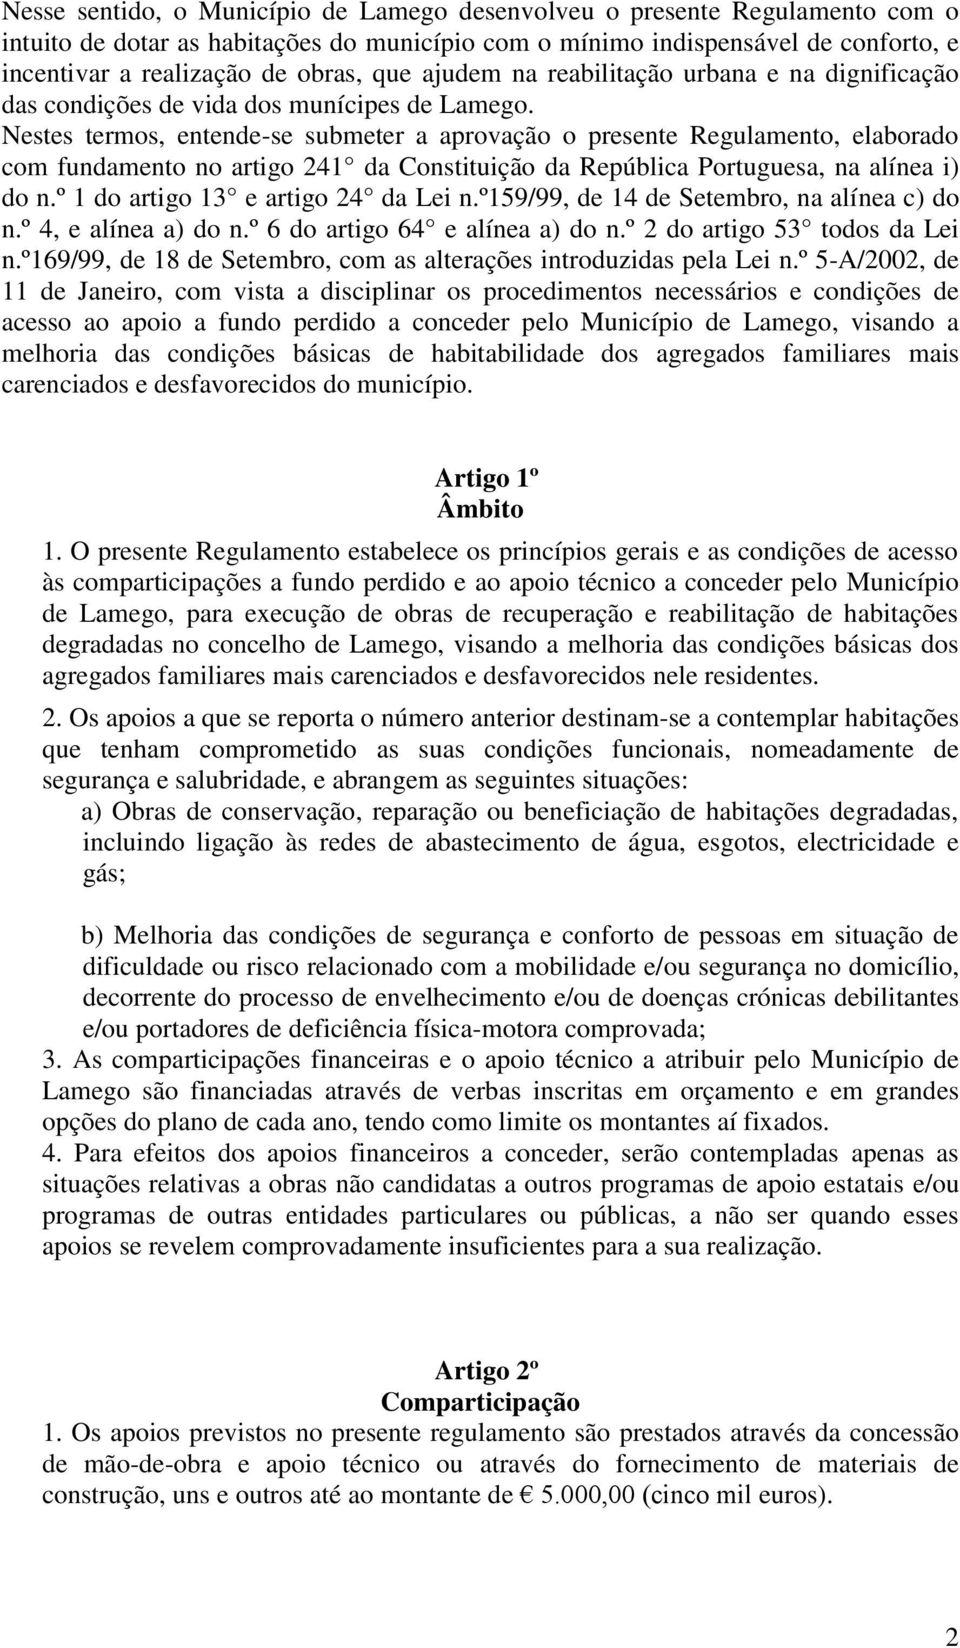 Nestes termos, entende-se submeter a aprovação o presente Regulamento, elaborado com fundamento no artigo 241 da Constituição da República Portuguesa, na alínea i) do n.